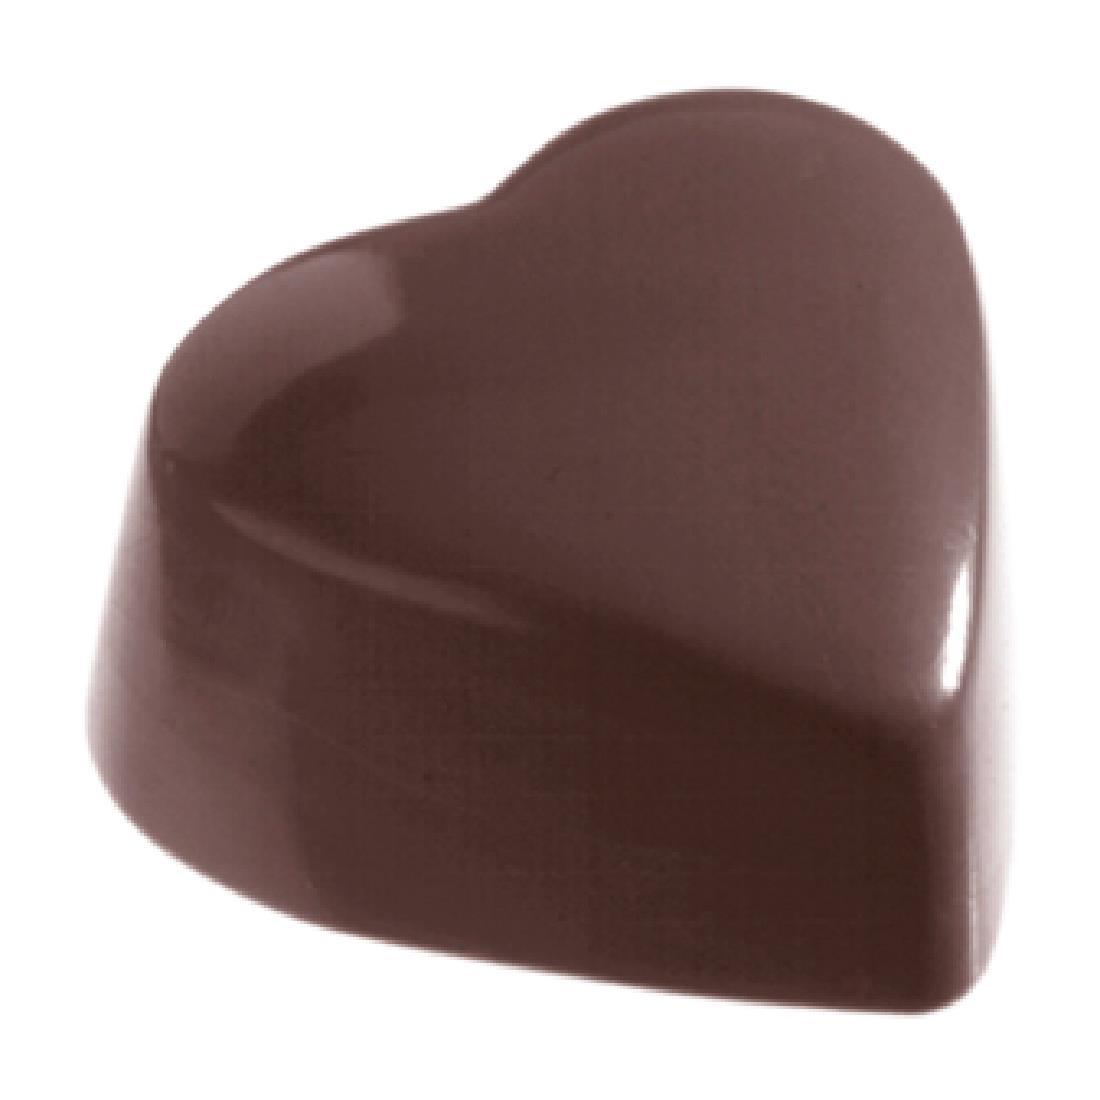 Schneider Chocolate Mould Heart - DW293  - 6